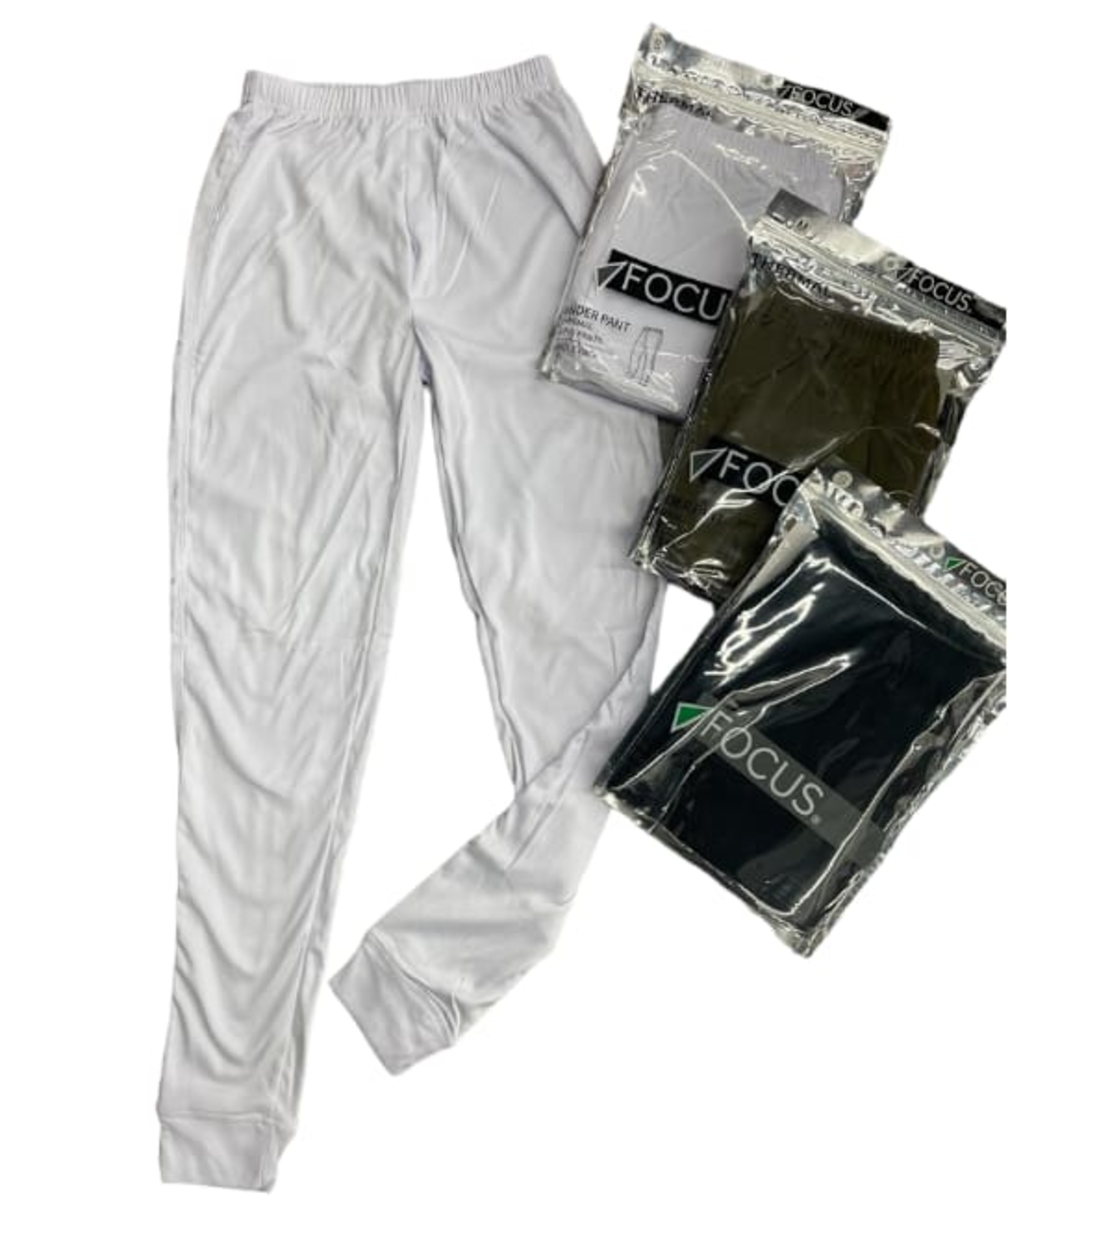 מכנס גטקס פלנל גבר FOCUS (S-XXL) (לבן/שחור/ירוק זית)